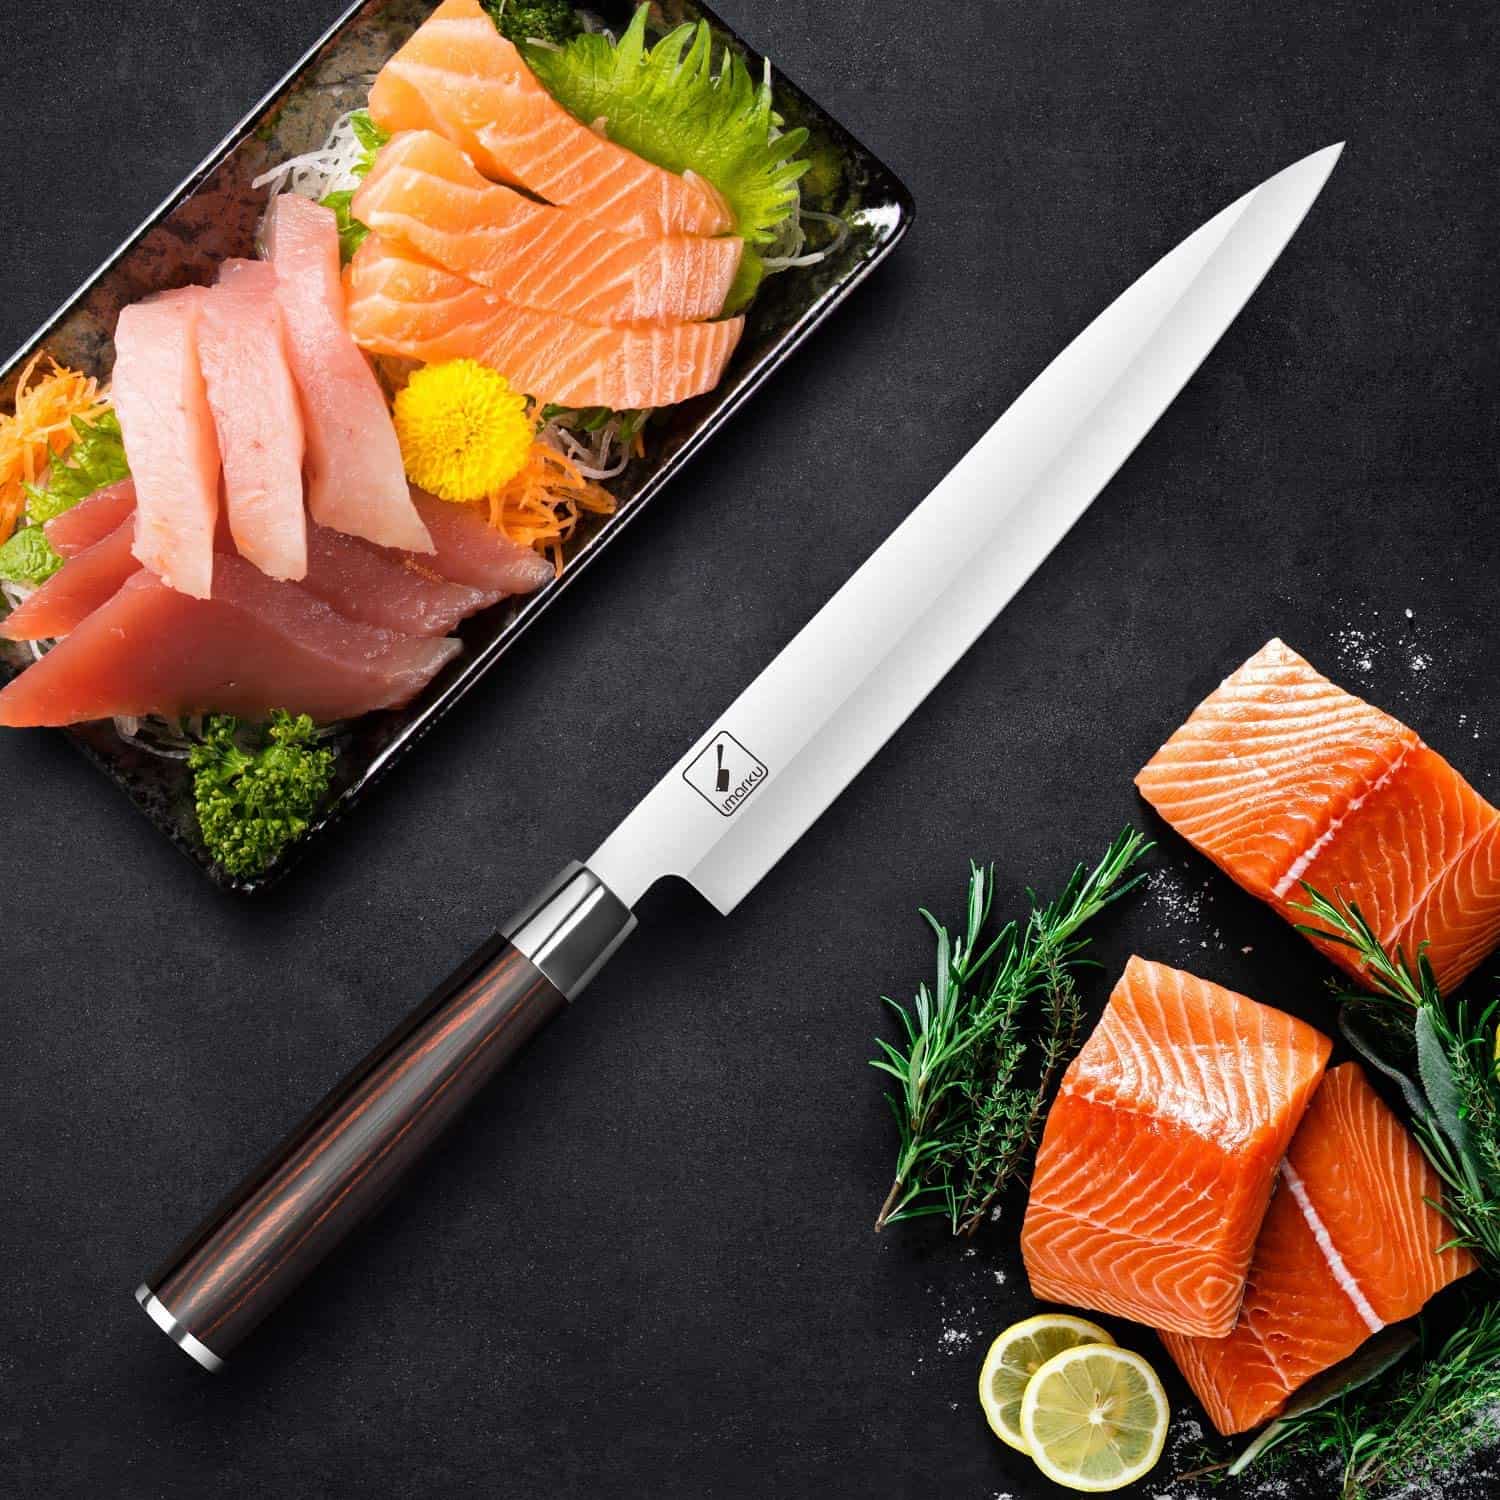 มีด yanagiba โดยรวมที่ดีที่สุด - Imarku Professional Single Bevel Sushi Knife บนโต๊ะ